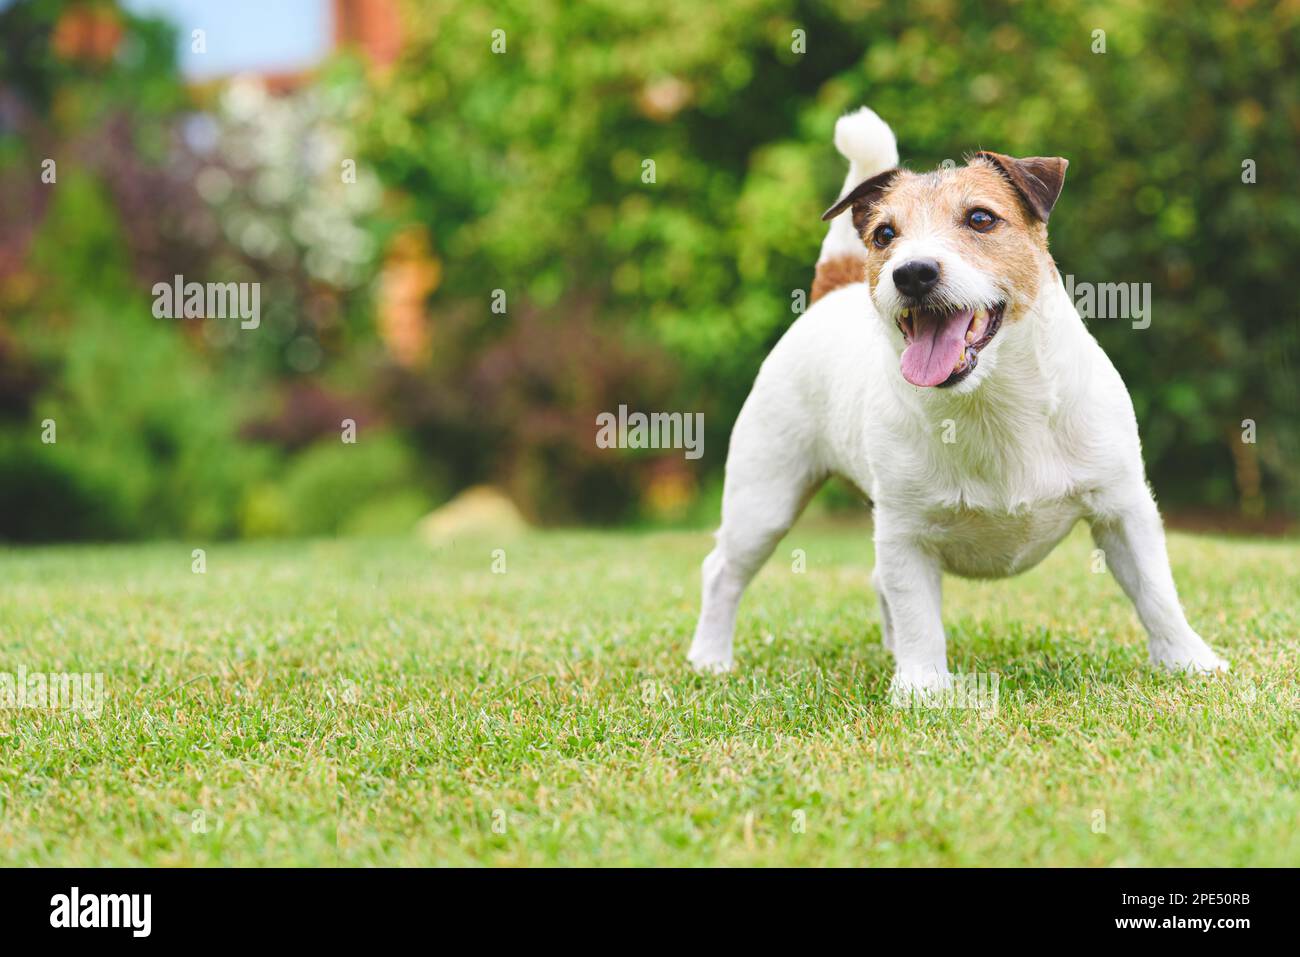 Portrait complet d'un chien souriant qui joue sur une pelouse en herbe verte le jour de l'été. Banque D'Images